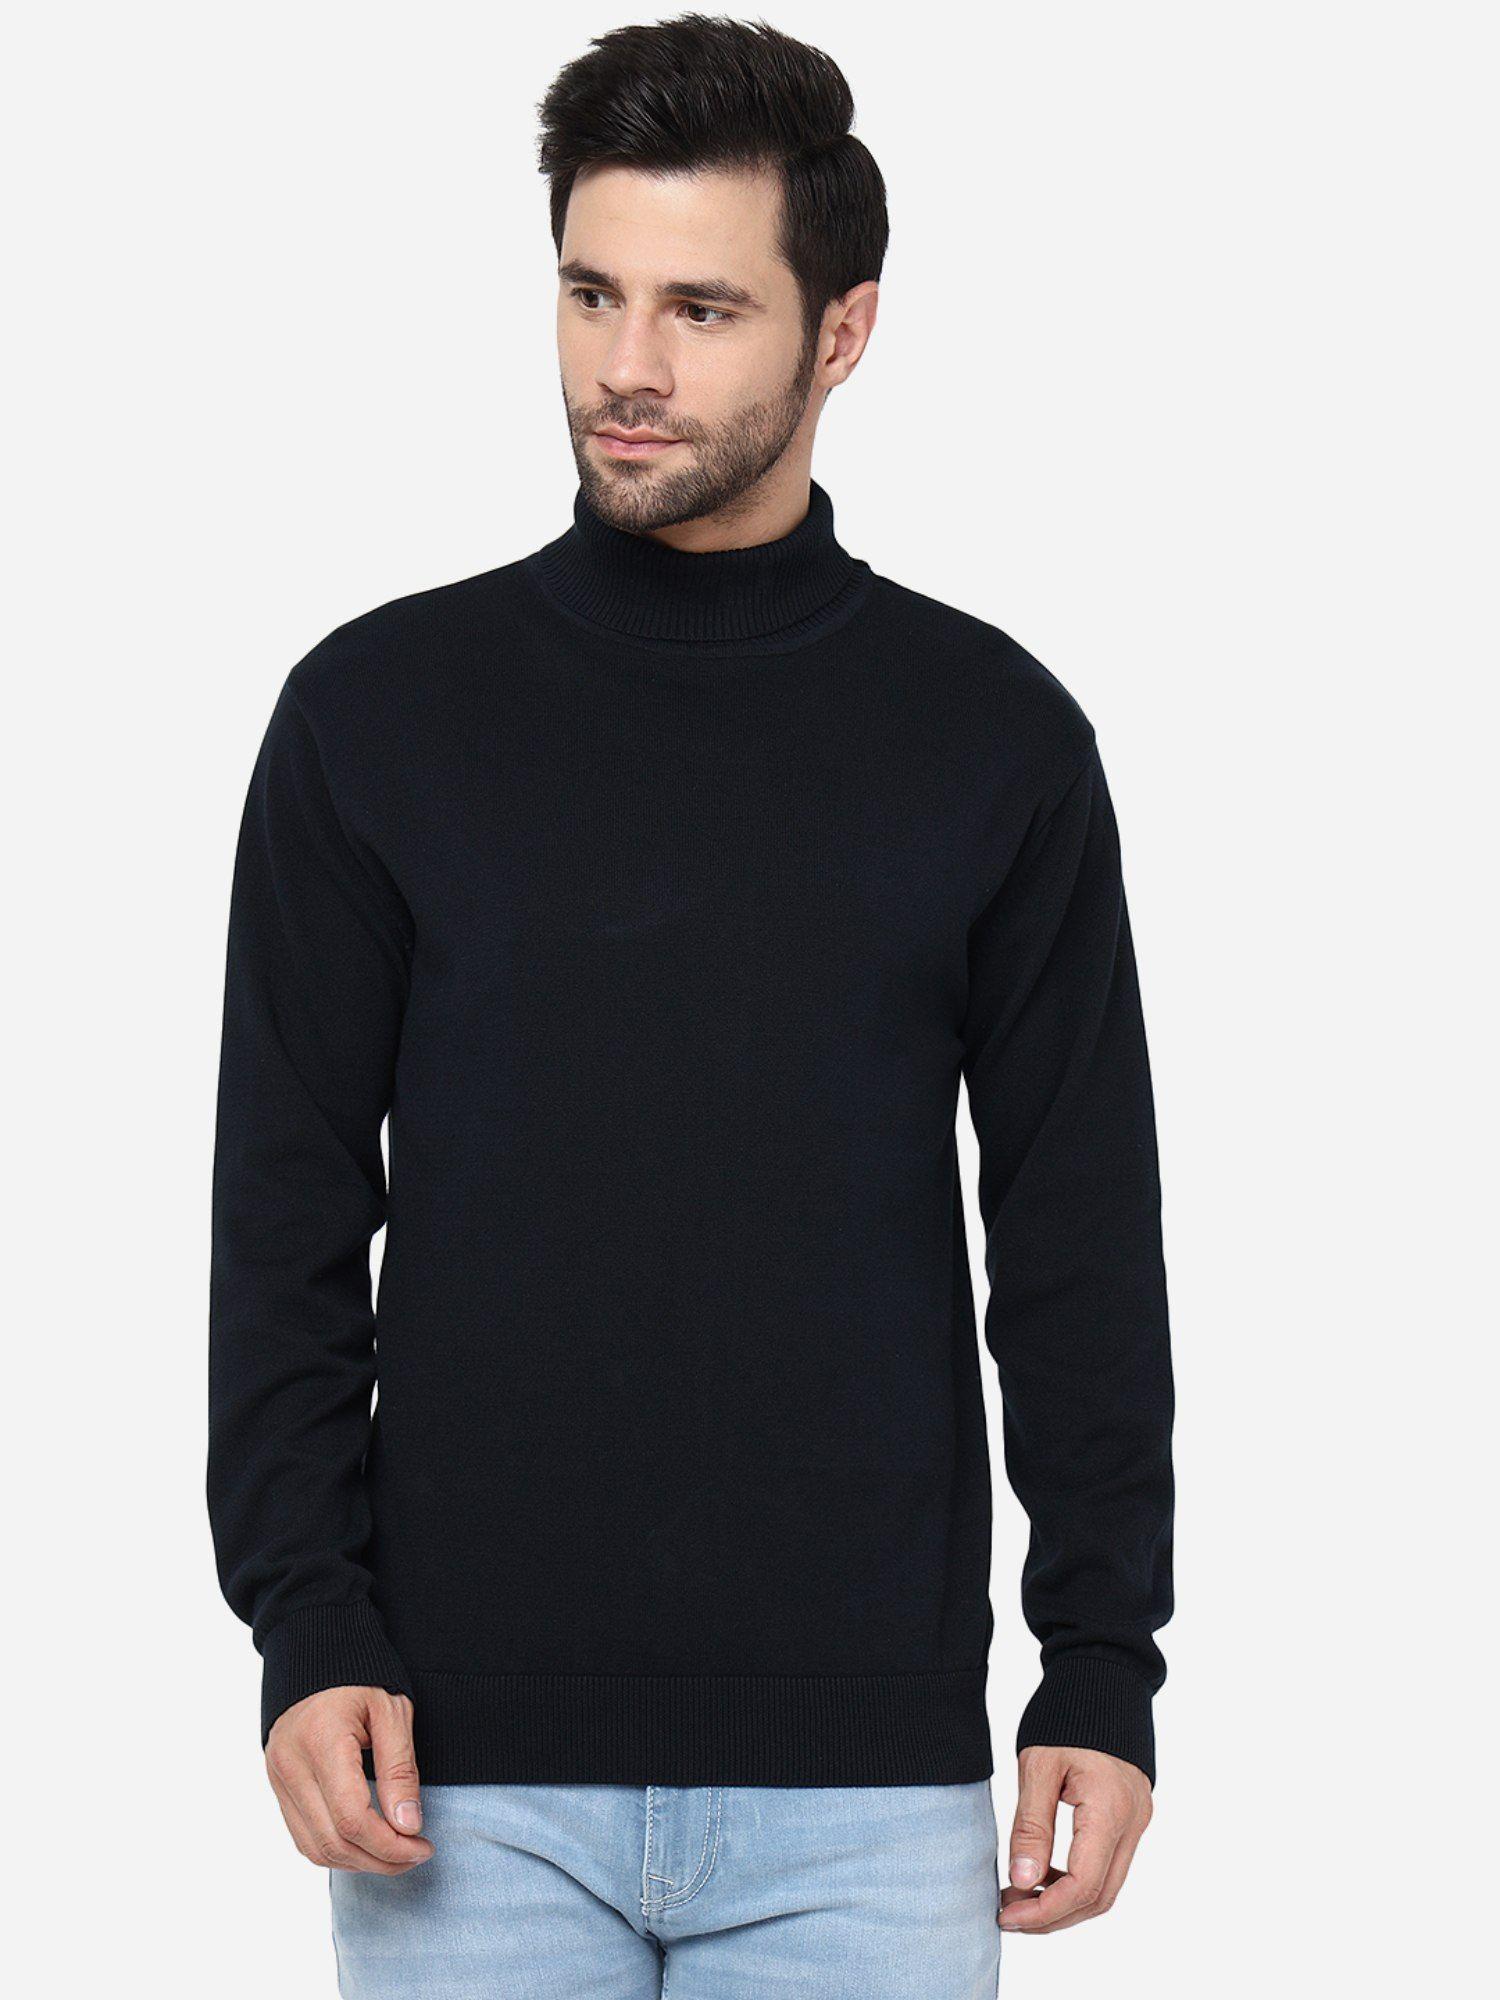 mens solid navy blue slim fit full sleeve sweatshirt